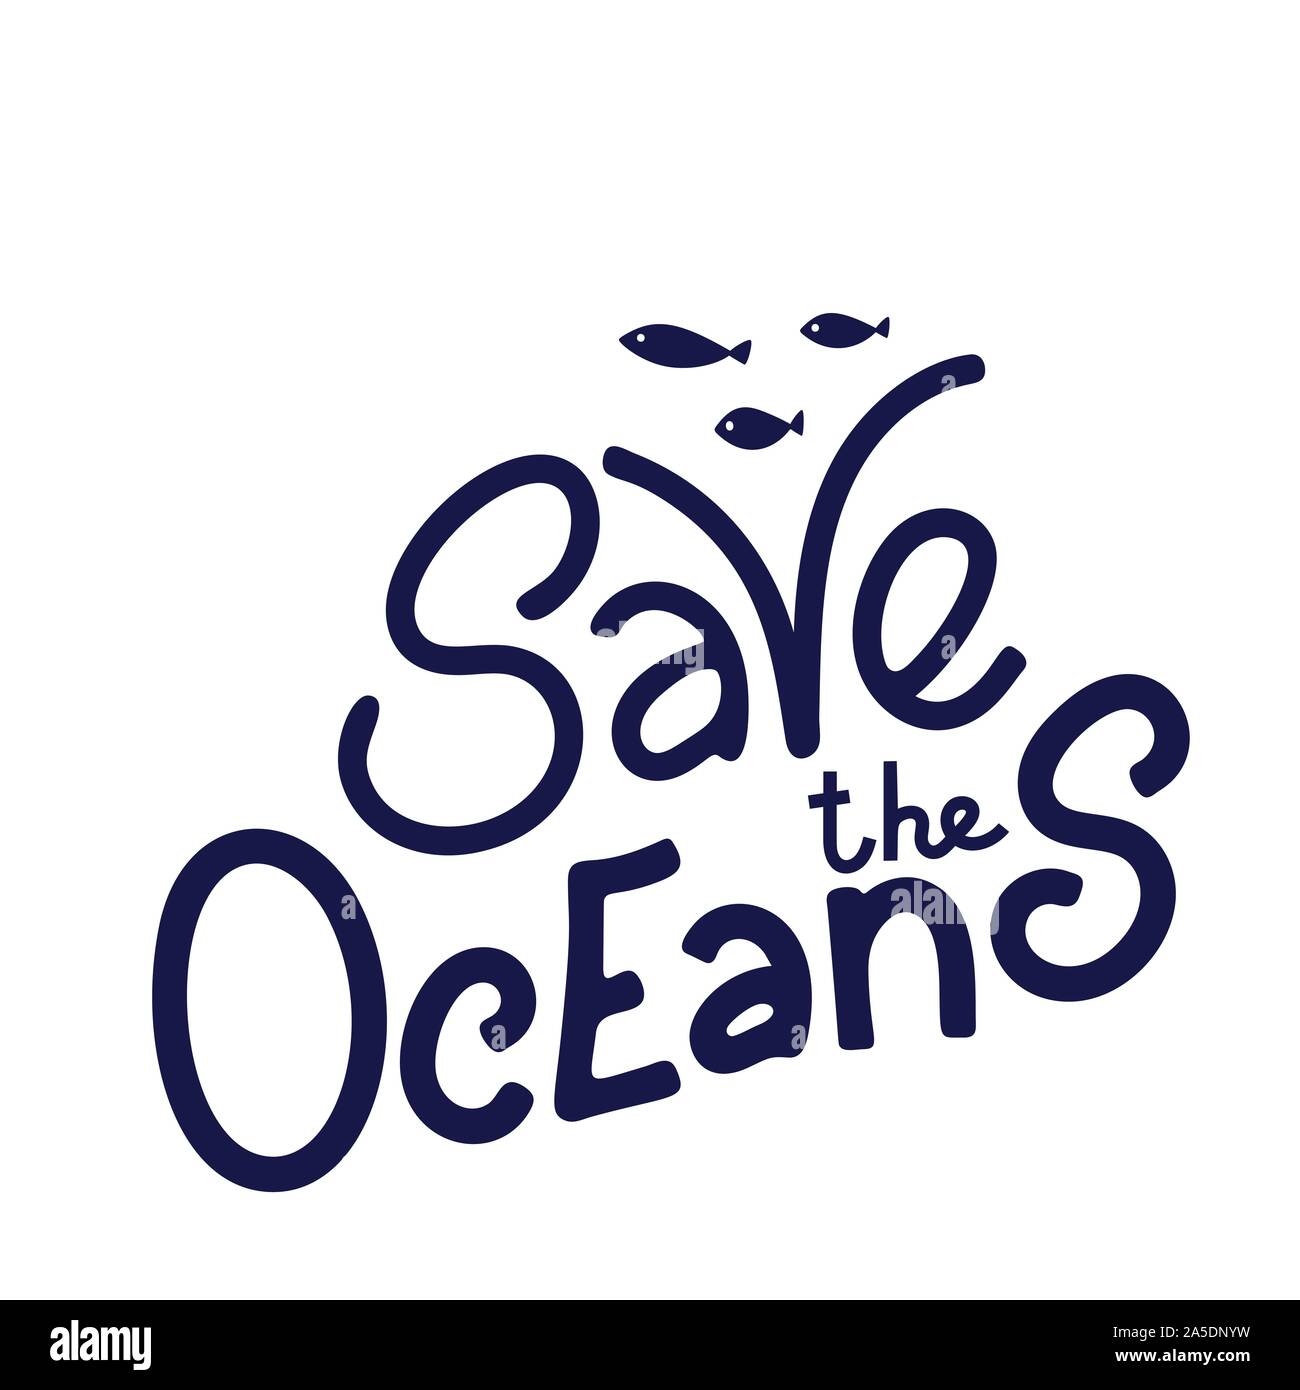 Speichern Sie die ocean Hand gezeichnet Schriftzug. Ozean Konzept schützen. Vector Illustration in doodle Stil. Stock Vektor